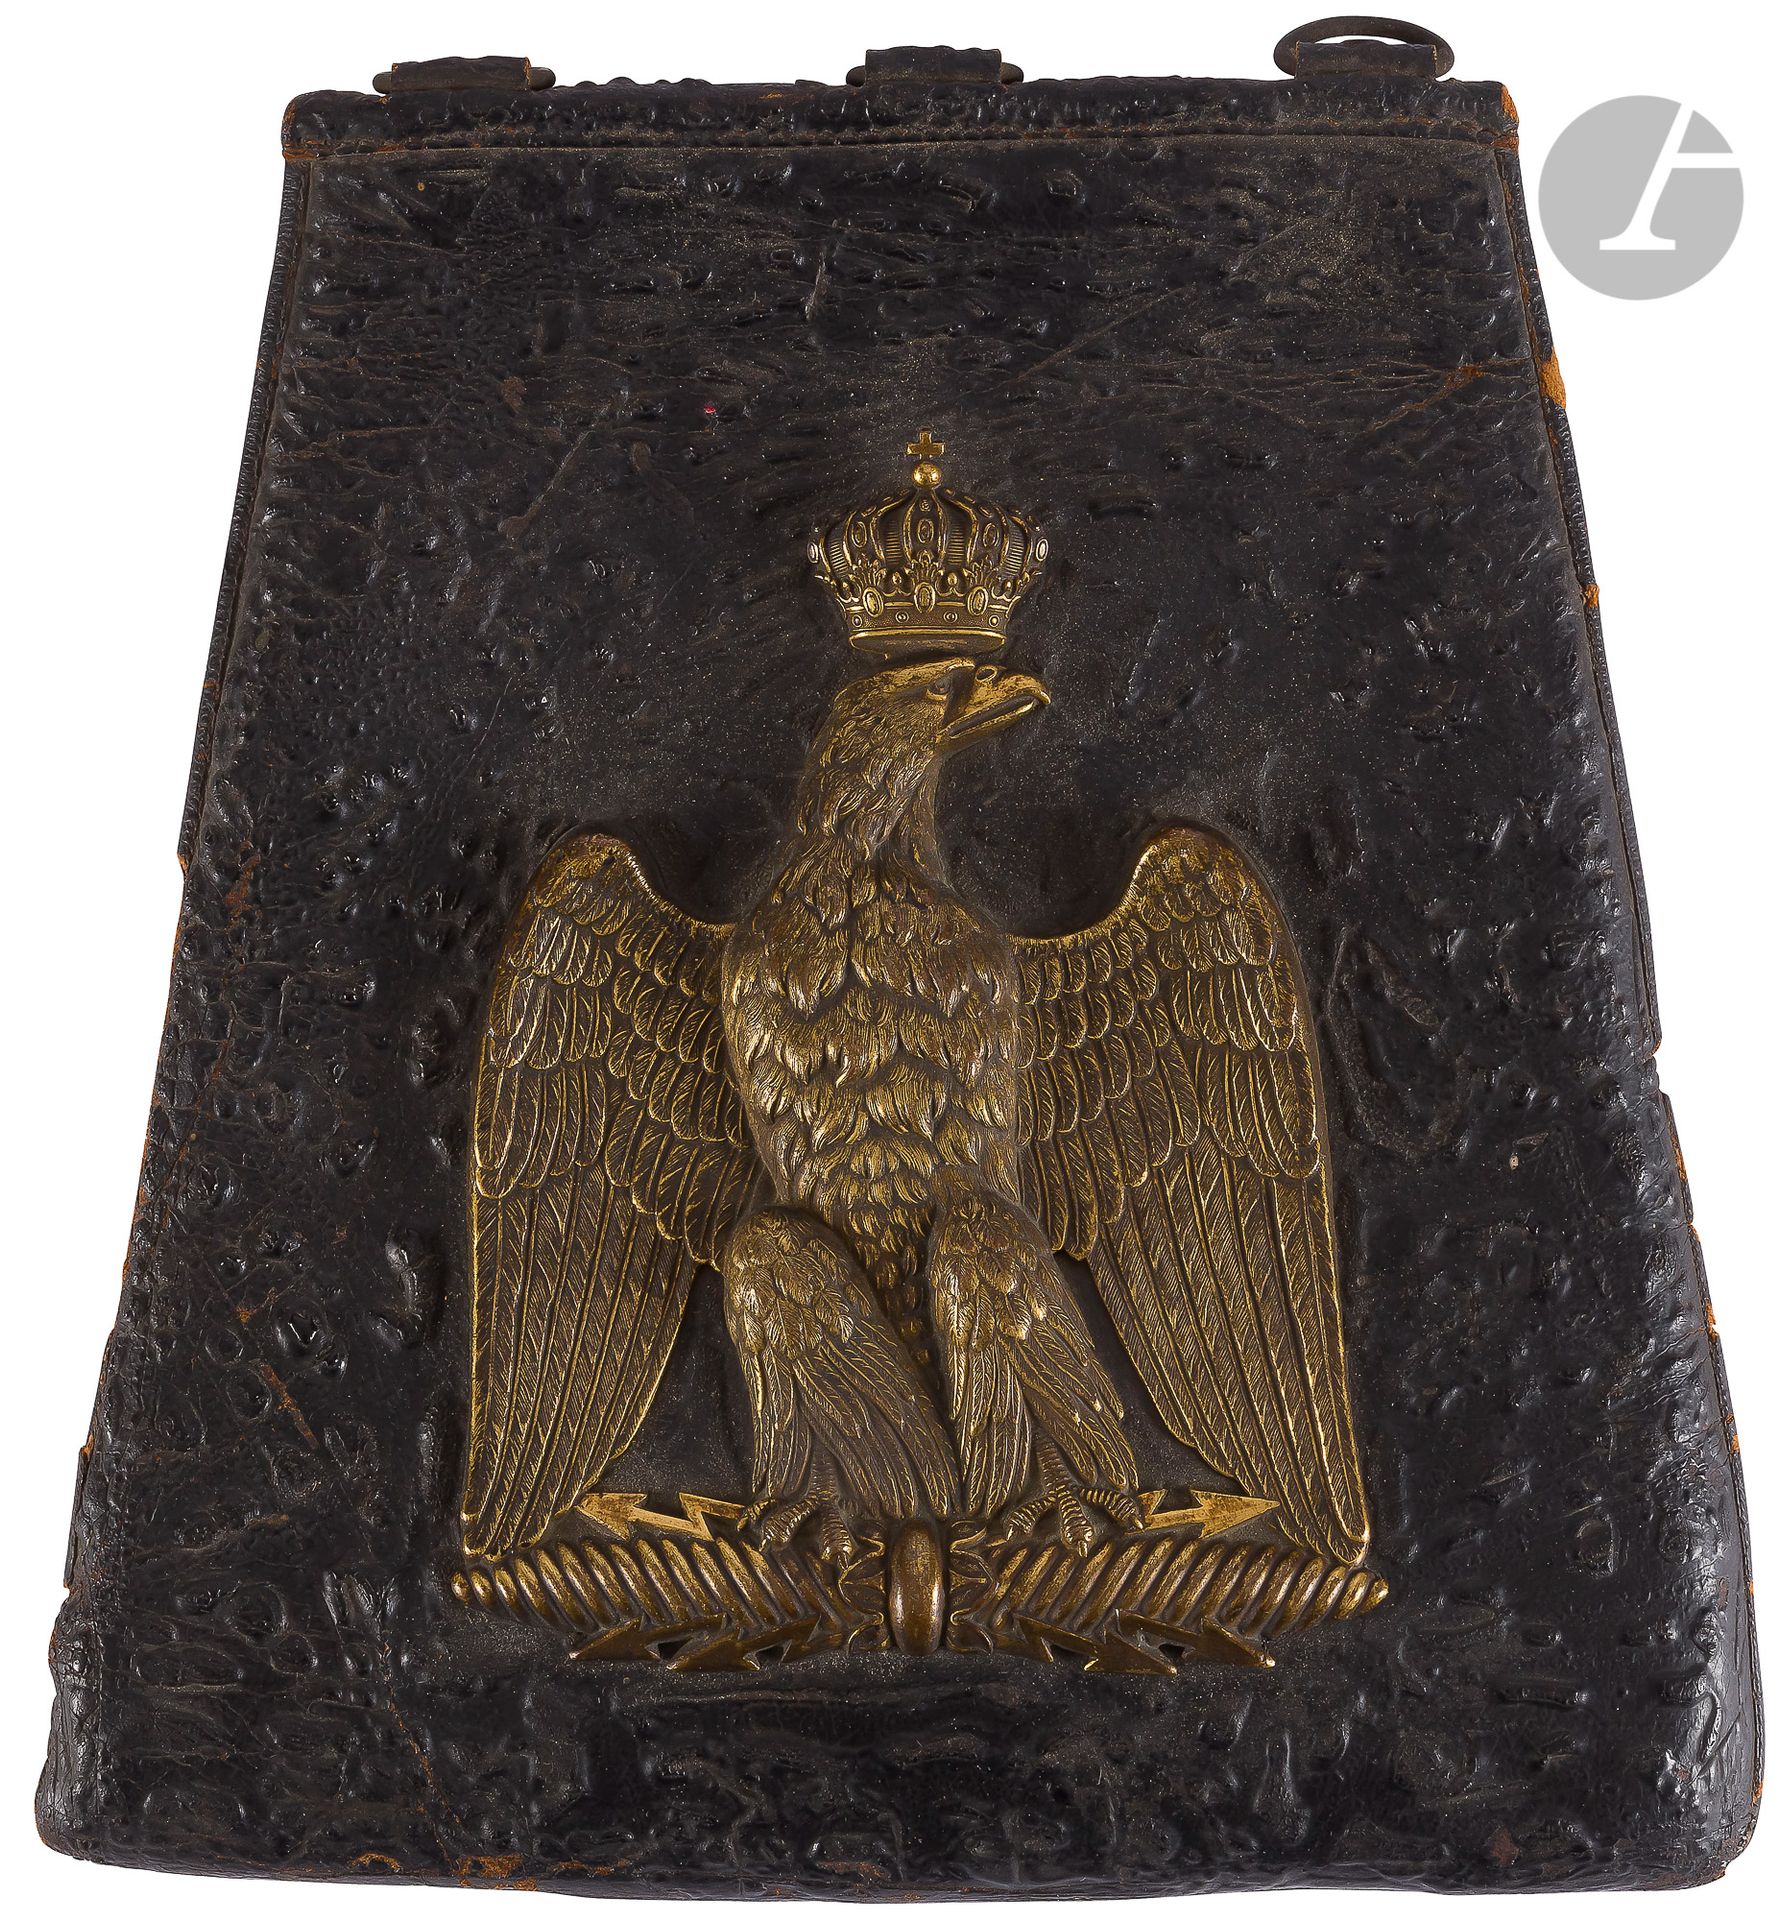 Null 轻骑兵军官的军帽。
黑色皮革。黄铜冠下的老鹰图案。
按原样。第二帝国时期。